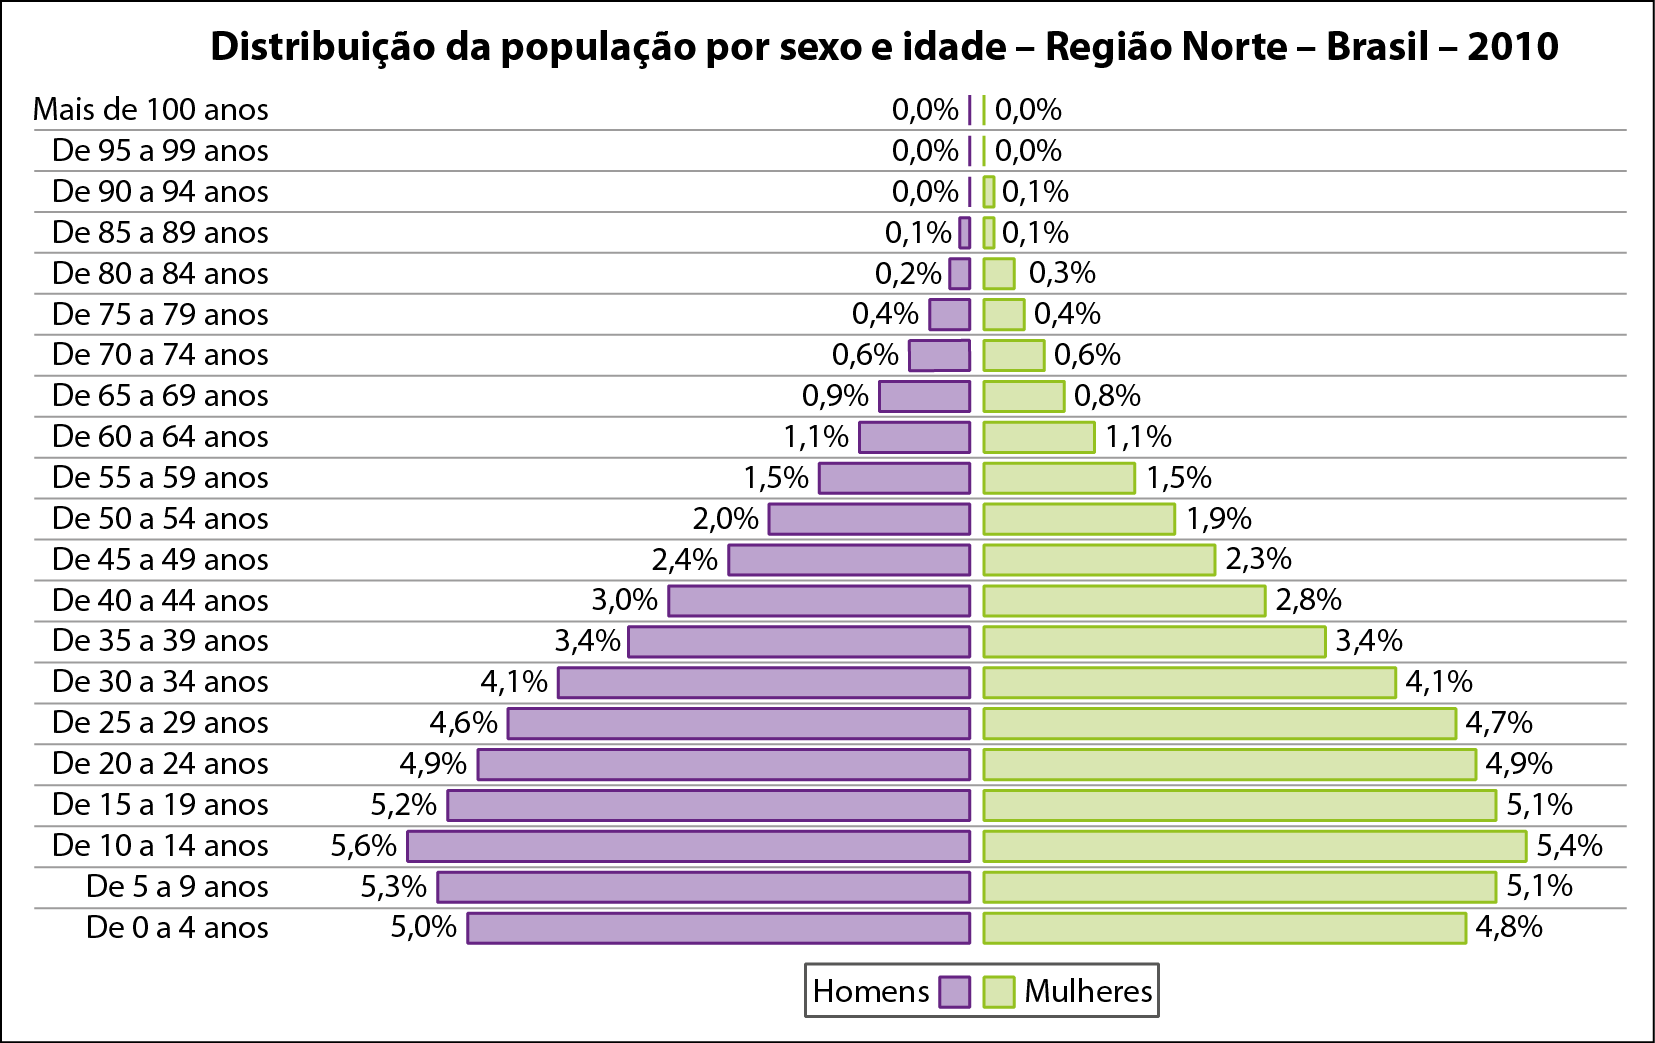 Gráfico. Pirâmide etária. Distribuição da população por sexo e idade – Região Norte – Brasil – 2010. À esquerda, homens. À direita, mulheres. De baixo para cima, os dados são: De 0 a 4. Homens:  5,0%. Mulheres:  4,8%. De 5 a 9. Homens. 5,3%. Mulheres: 5,1%. De 10 a 14. Homens:  5,6%. Mulheres:  5,4%. De 15 a 19. Homens:  5,2%. Mulheres:  5,1%. De 20 a 24. Homens:  4,9%. Mulheres:  4,9% De 25 a 29. Homens:  4,6%. Mulheres:  4,7%. De 30 a 34. Homens:  4,1%. Mulheres:  4,1%. De 35 a 39. Homens:  3,4%. Mulheres:  3,4%. De 40 a 44. Homens:  3,0%. Mulheres:  2,8%. De 45 a 49. Homens:  2,4%. Mulheres: 2,3%. De 50 a 54. Homens:  2,0%. Mulheres:  1,9%. De 55 a 59. Homens:  1,5%. Mulheres:  1,5%. De 60 a 64. Homens:  1,1%. Mulheres:  1,1%. De 65 a 69. Homens: 0,9%. Mulheres:  0,8%. De 70 a 74. Homens:  0,6%. Mulheres:  0,6%. De 75 a 79. Homens:  0,4%. Mulheres:  0,4%. De 80 a 84. Homens:  0,2%. Mulheres: 0,3%. De 85 a 89. Homens:  0,1%. Mulheres:  0,1%. De 90 a 94. Homens:  0,0%. Mulheres:  0,1%. De 95 a 99. Homens:  0,0%. Mulheres:  0,0%. Mais de 100 anos. Homens:  0,0%. Mulheres:  0,0%.